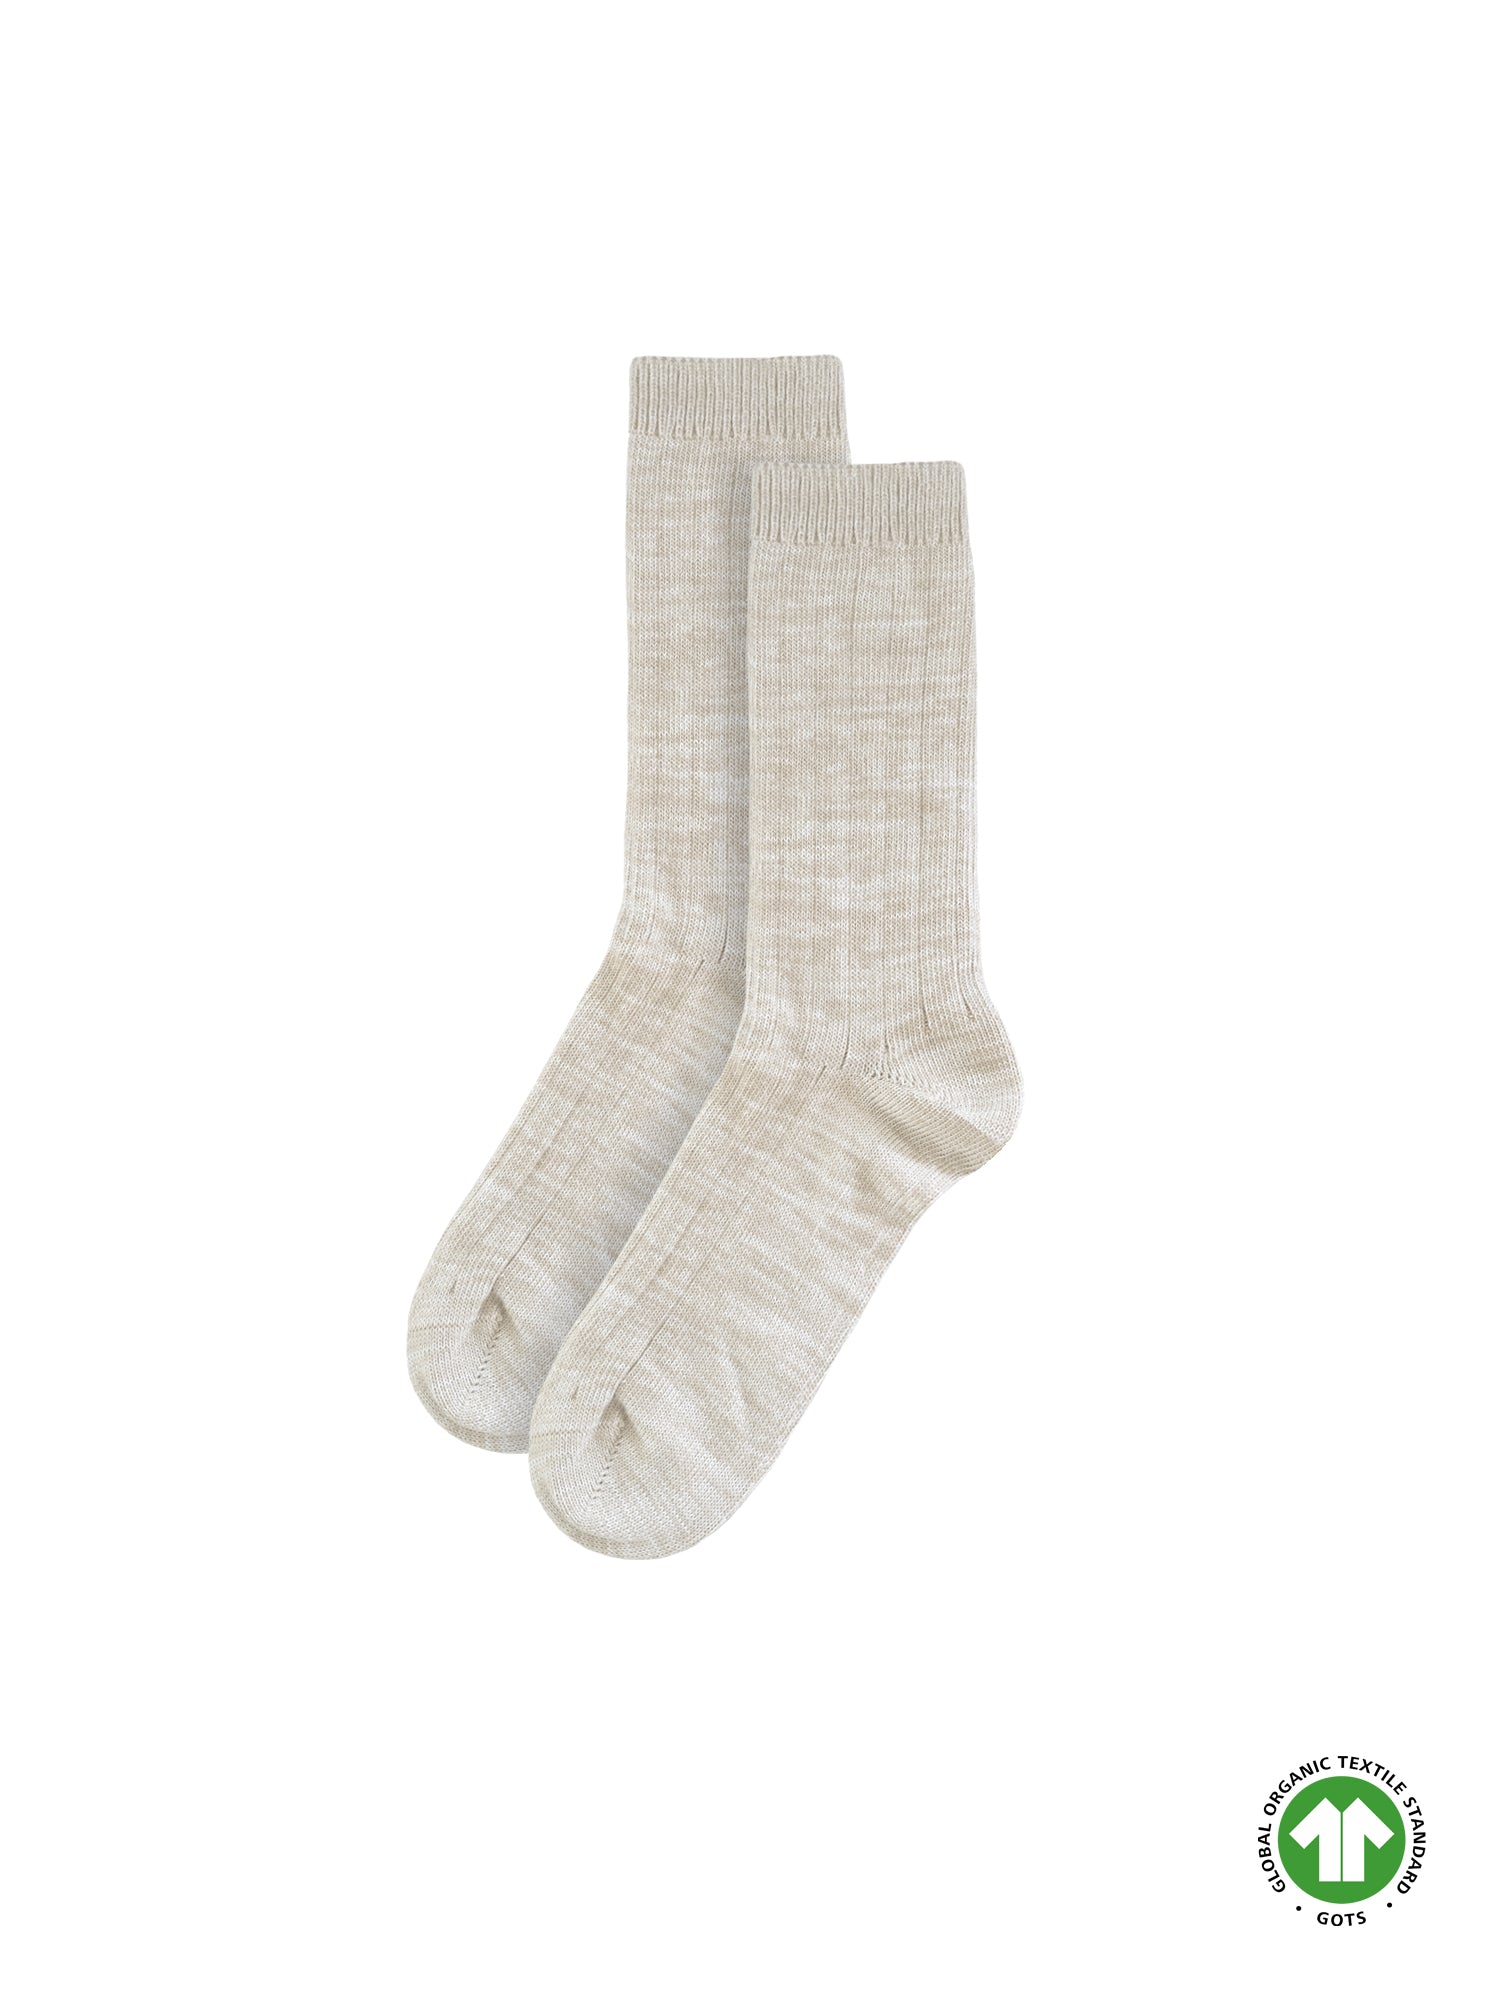 Fair Fashion FUXBAU Socken in beige meliert im 3er Pack aus GOTS zertifizierter Biobaumwolle. Made in Portugal